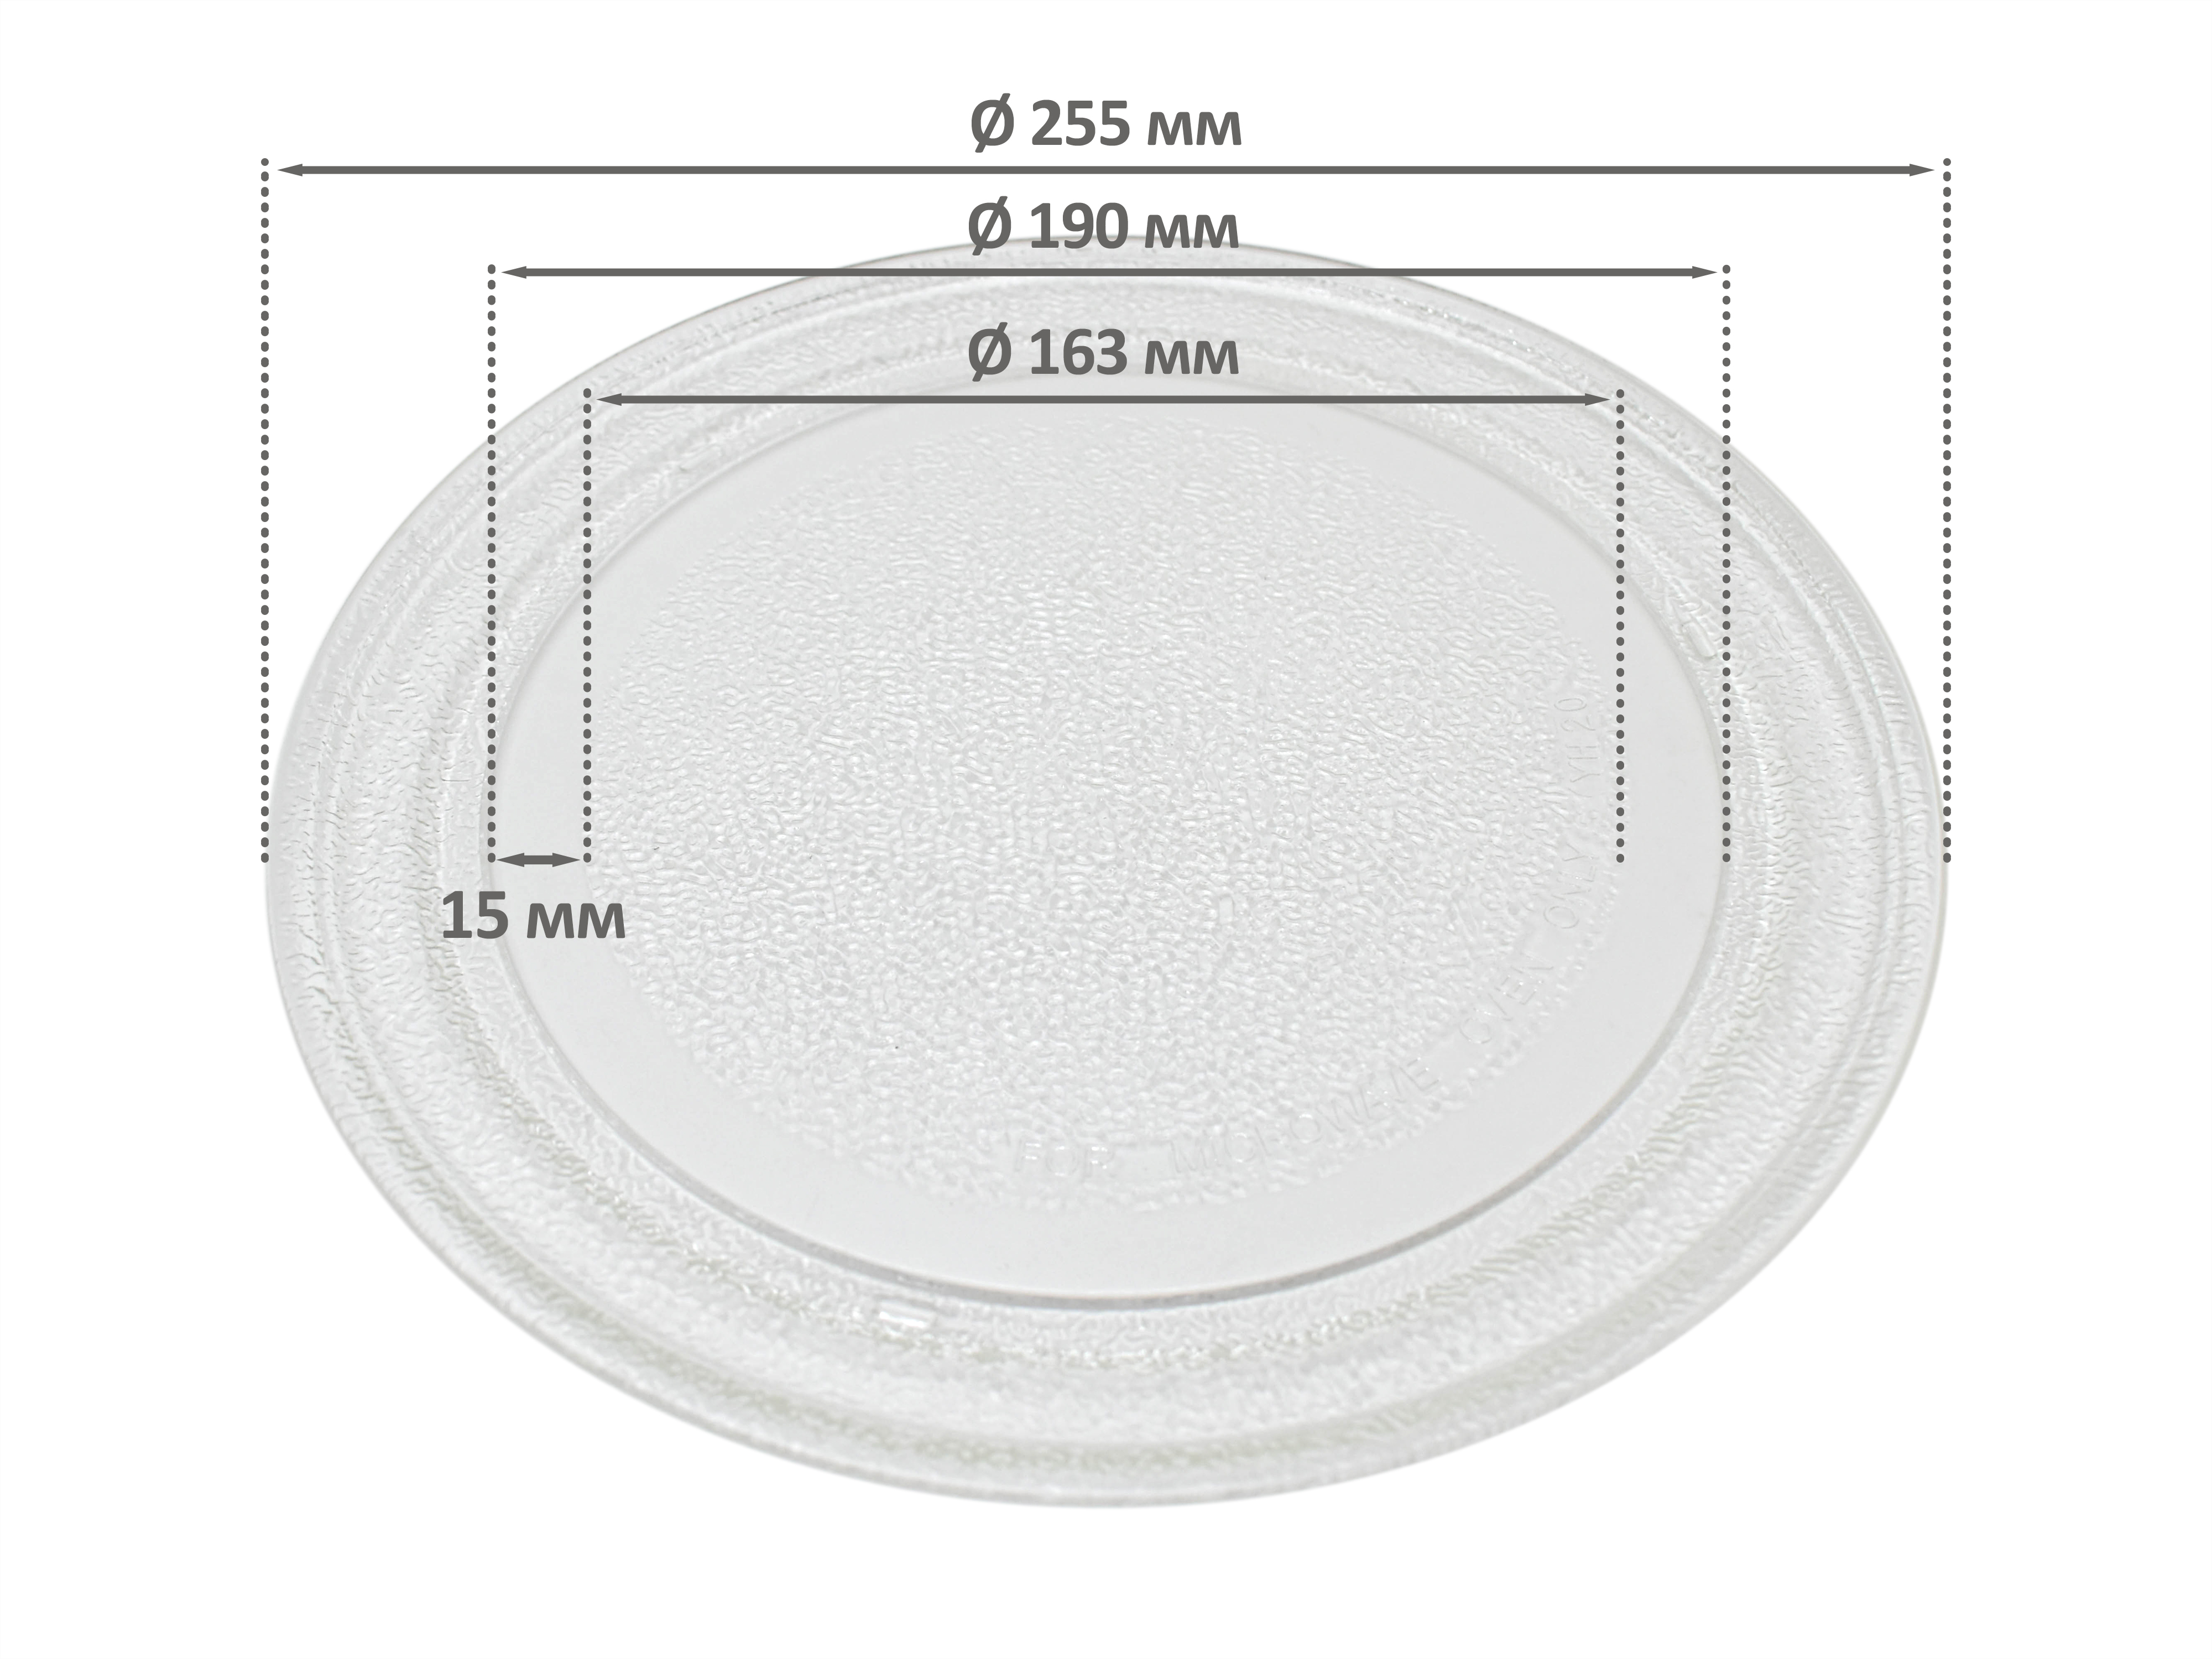 Тарелка для СВЧ для СВЧ микроволновой печи EKPARTS ER255BK тарелка для свч для свч микроволновой печи ekparts er255bk